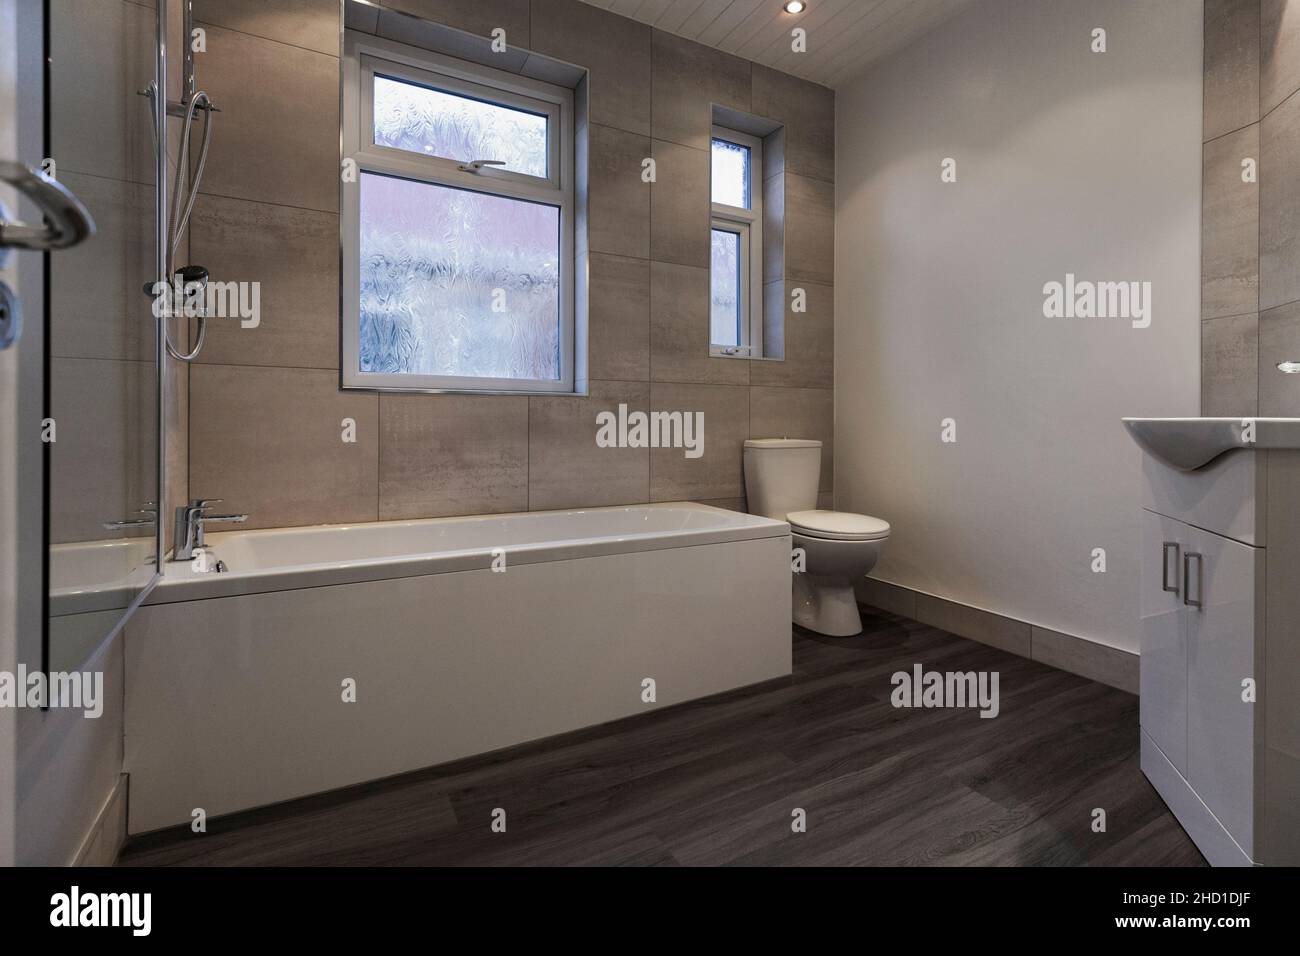 Bagno moderno con vanity unit, grandi piastrelle bianche Barrington, pavimento in vinile LVT grigio e pareti bianche, vasca doccia, schermo doccia e toilet Foto Stock